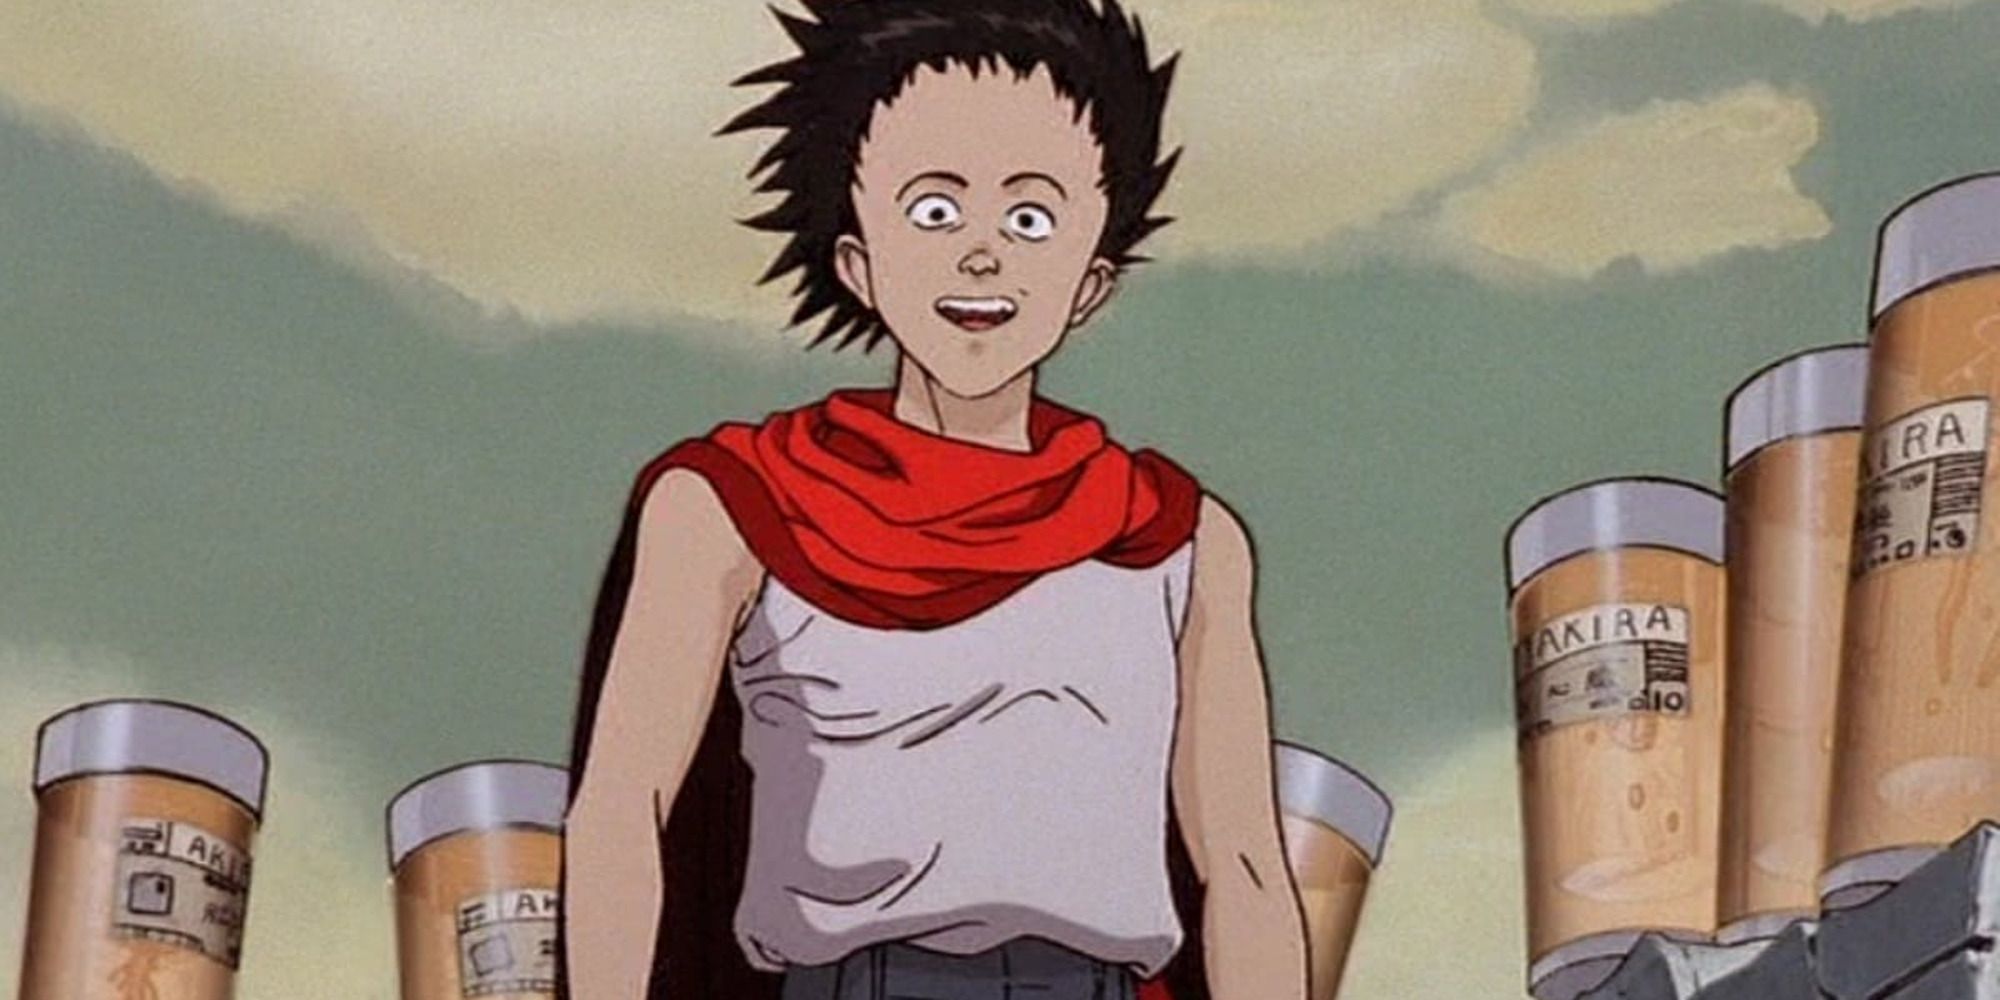 Anime jovem com camisa branca e capa vermelha